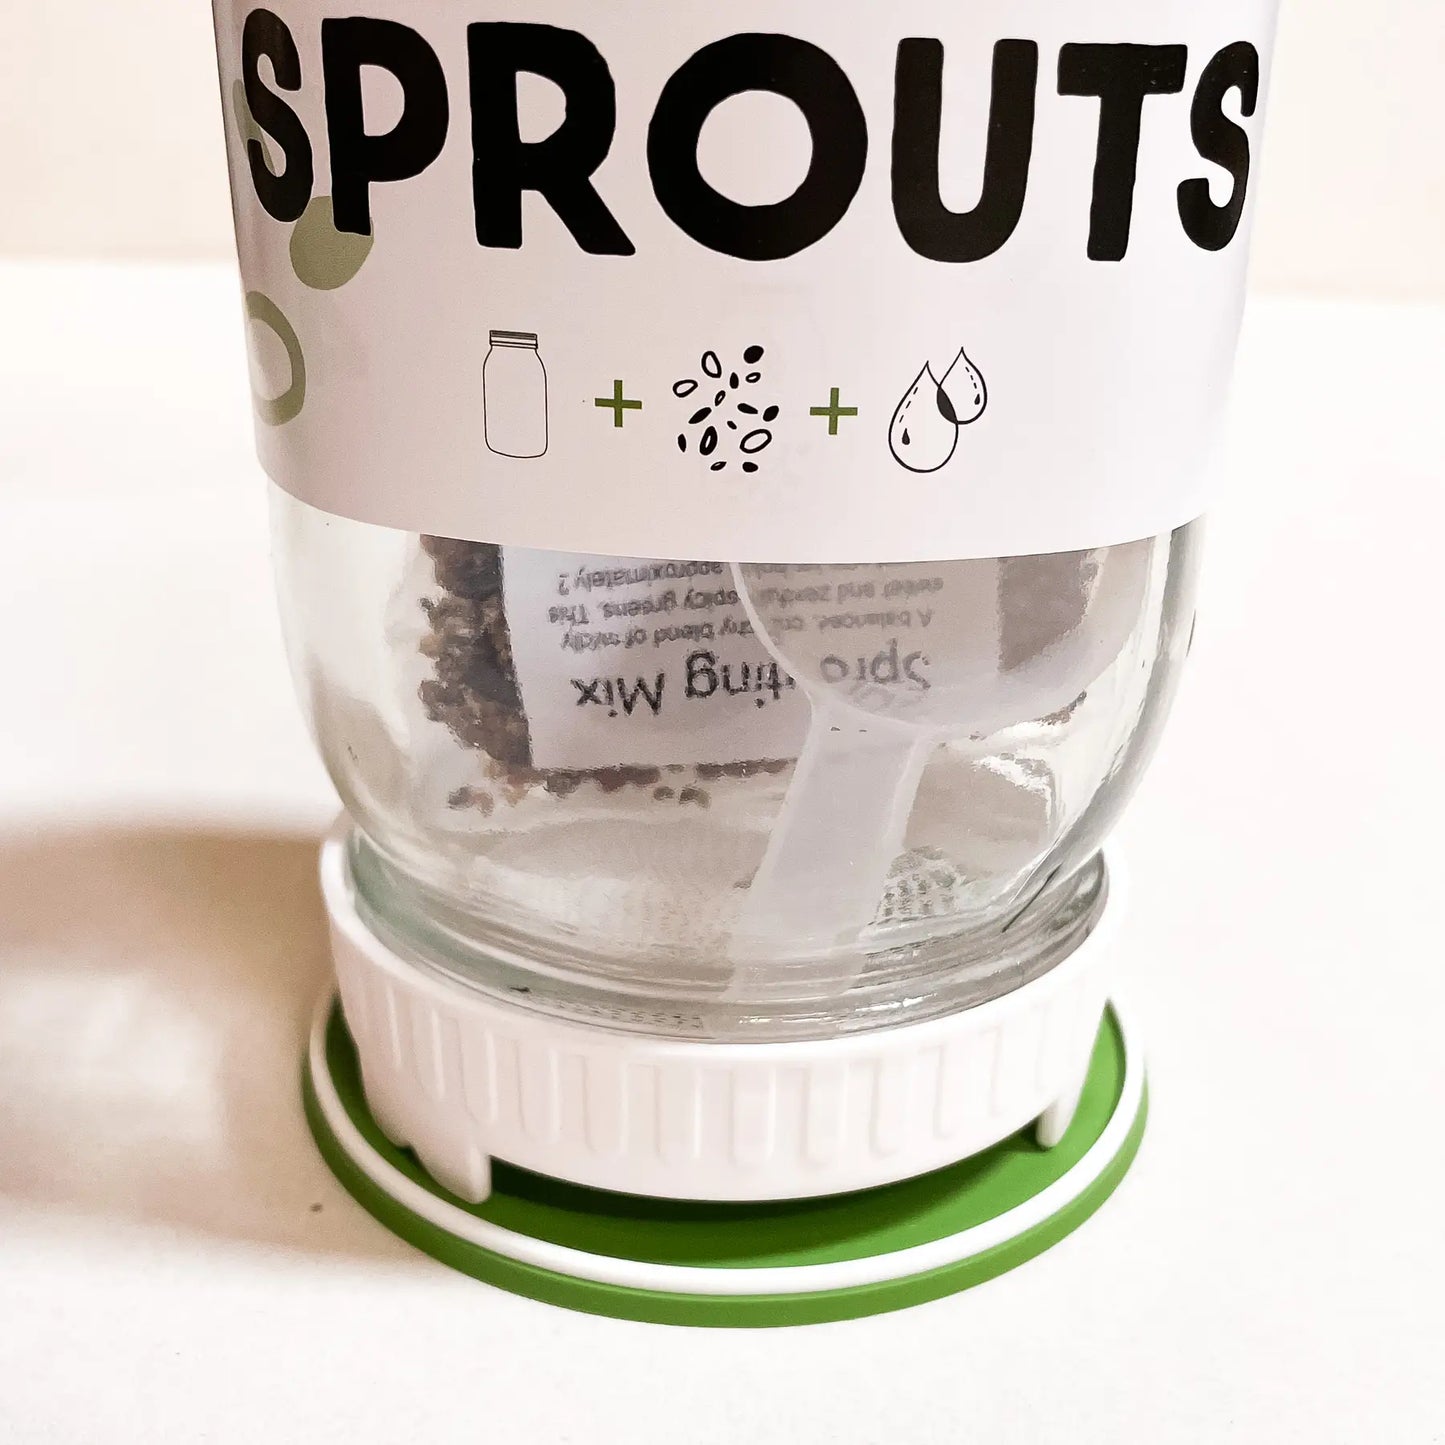 Sprouting Starter Kit